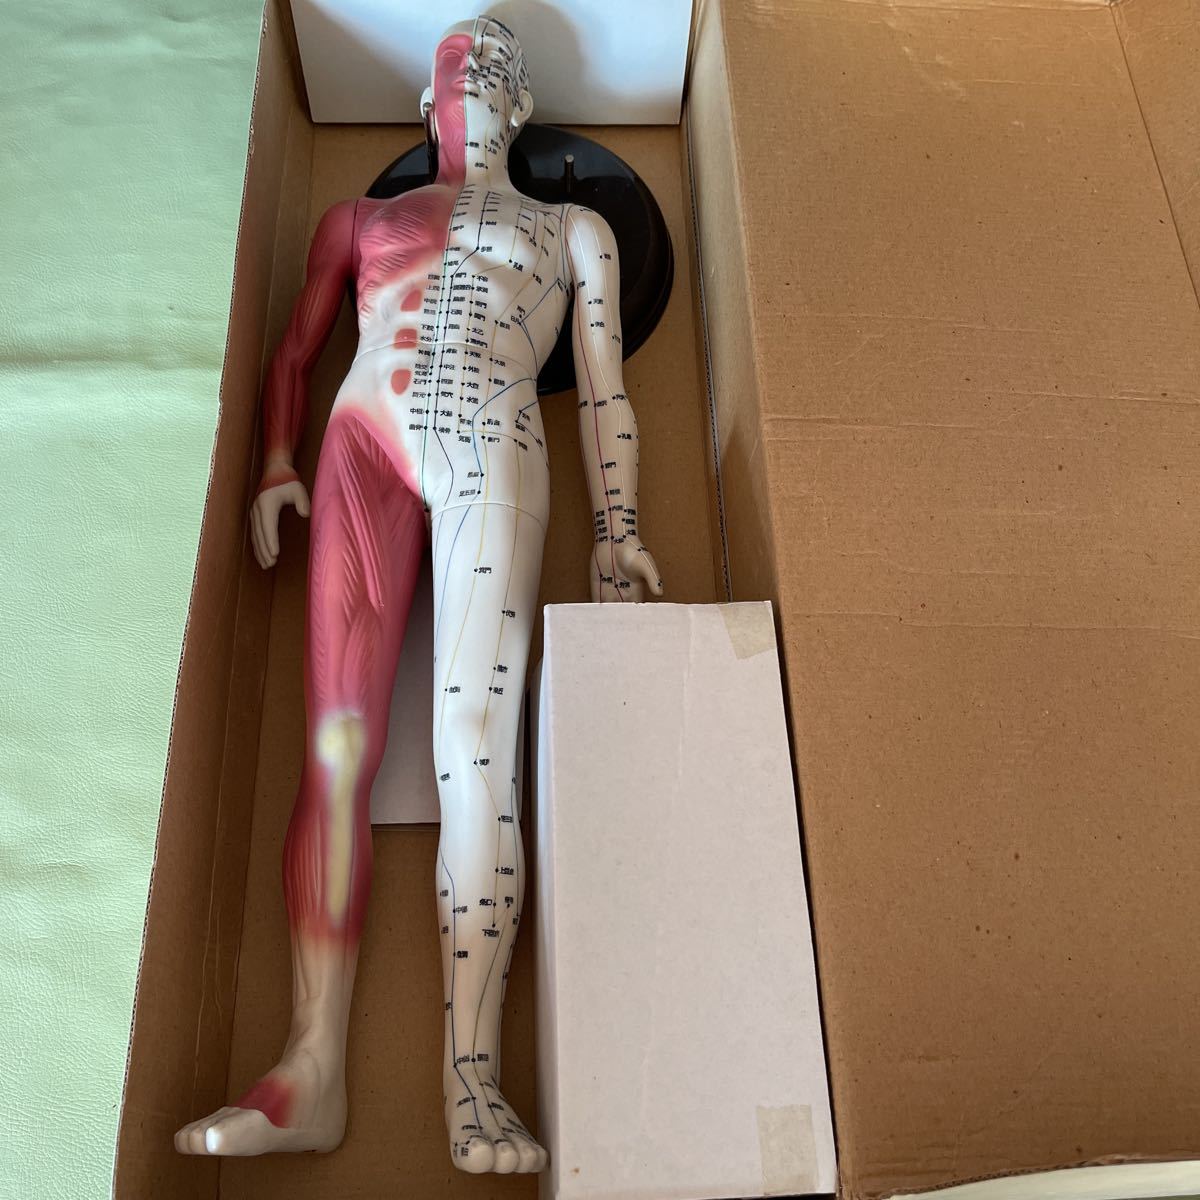  трудно найти товар японский . дорога фирма колледж иглоукалывание прижигание модель tsubo кукла целый body мускул модель .. модель . целый body . сделано в Японии 